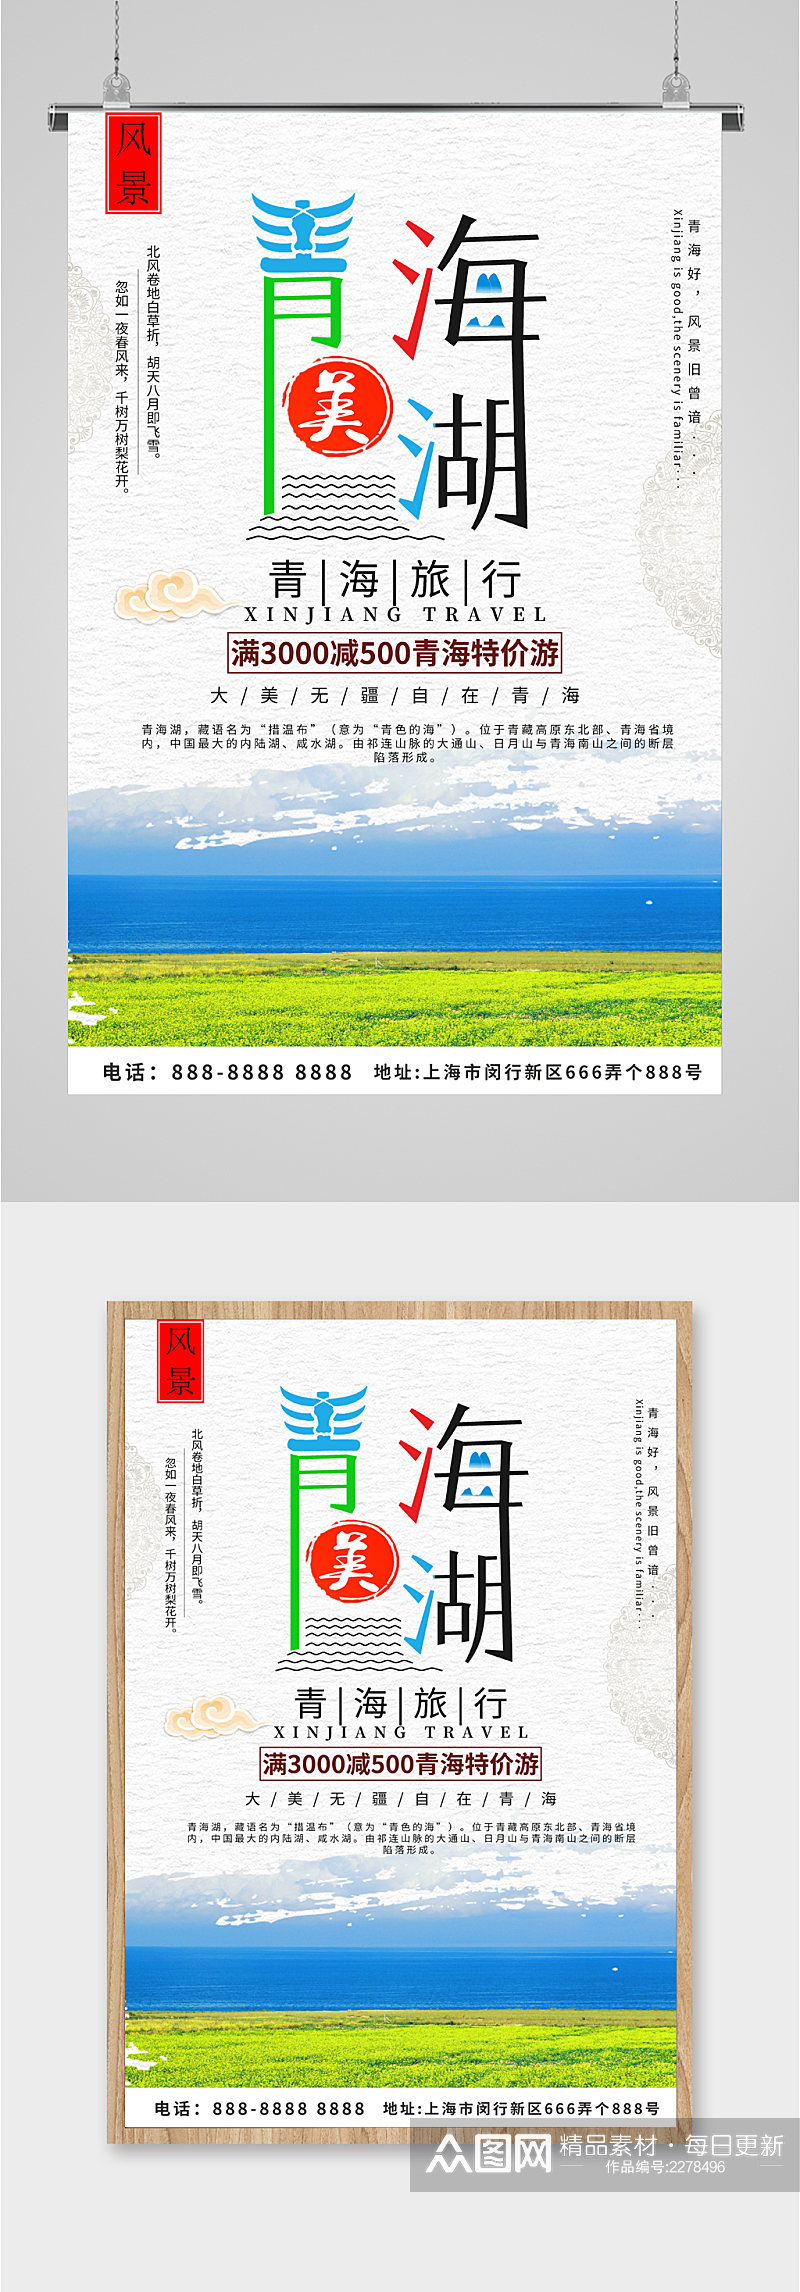 青海湖旅行简约海报素材